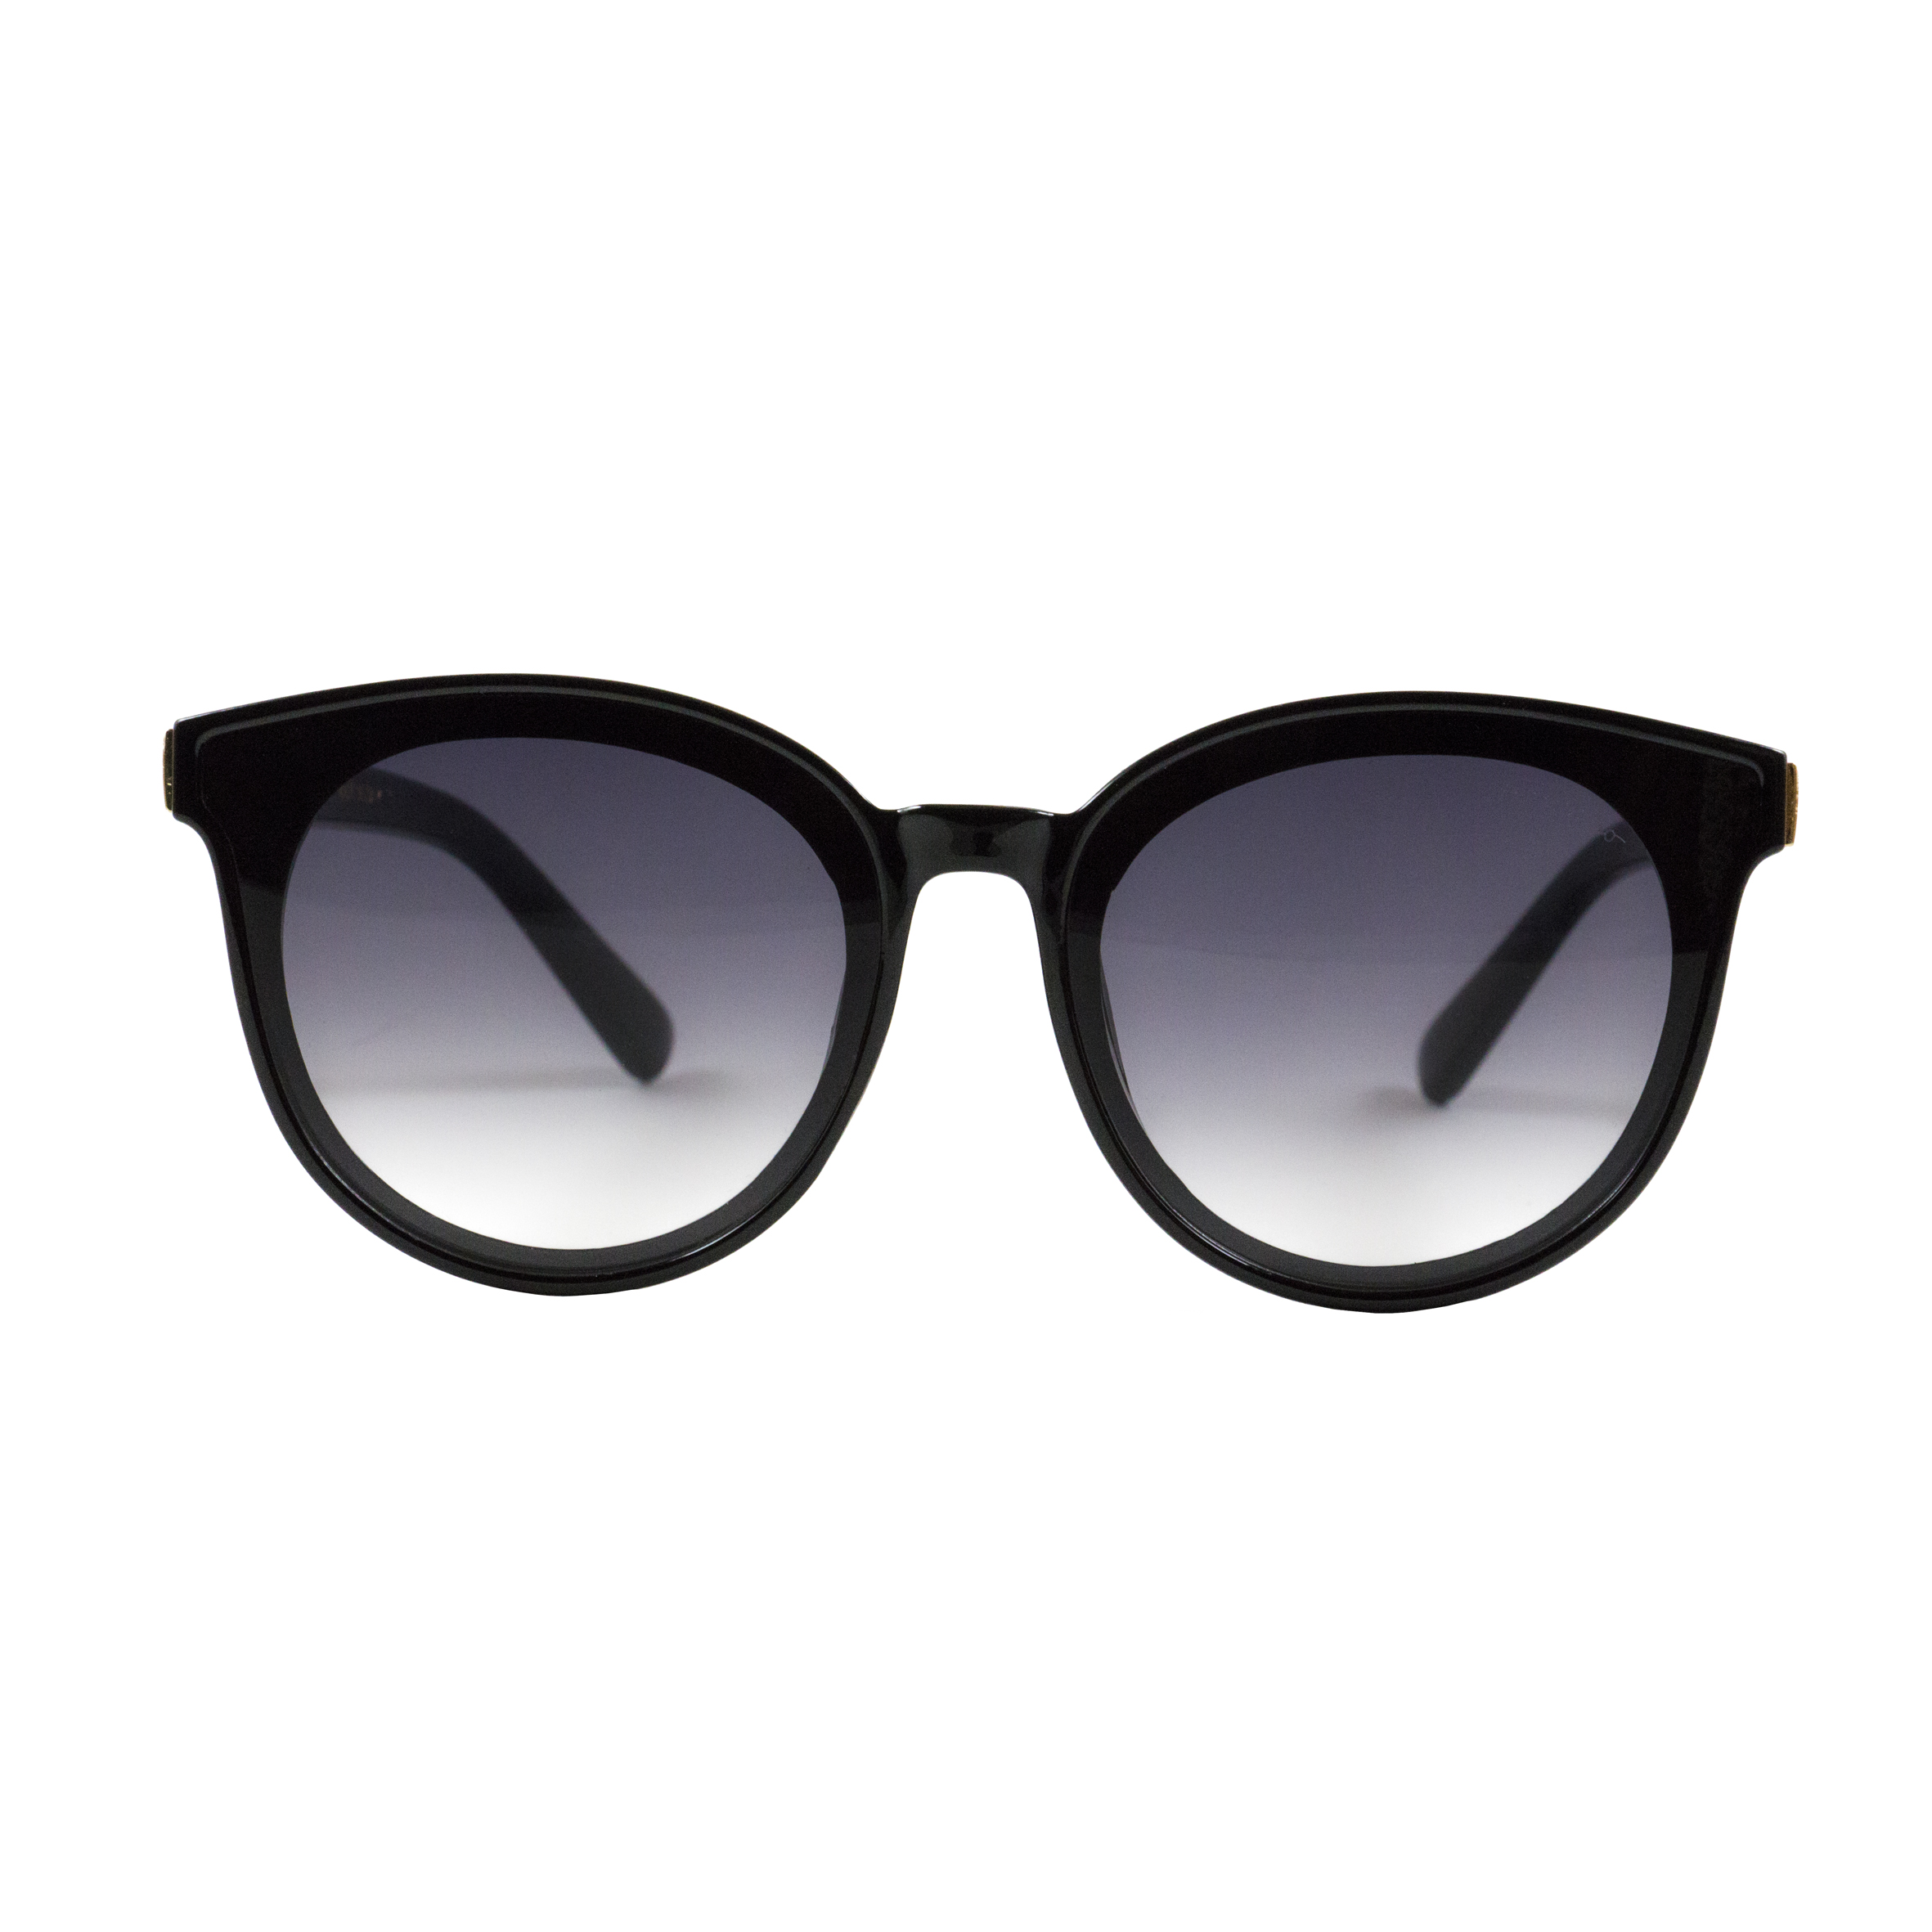 عینک آفتابی سالواتوره فراگامو مدل SF 906 60-15 139